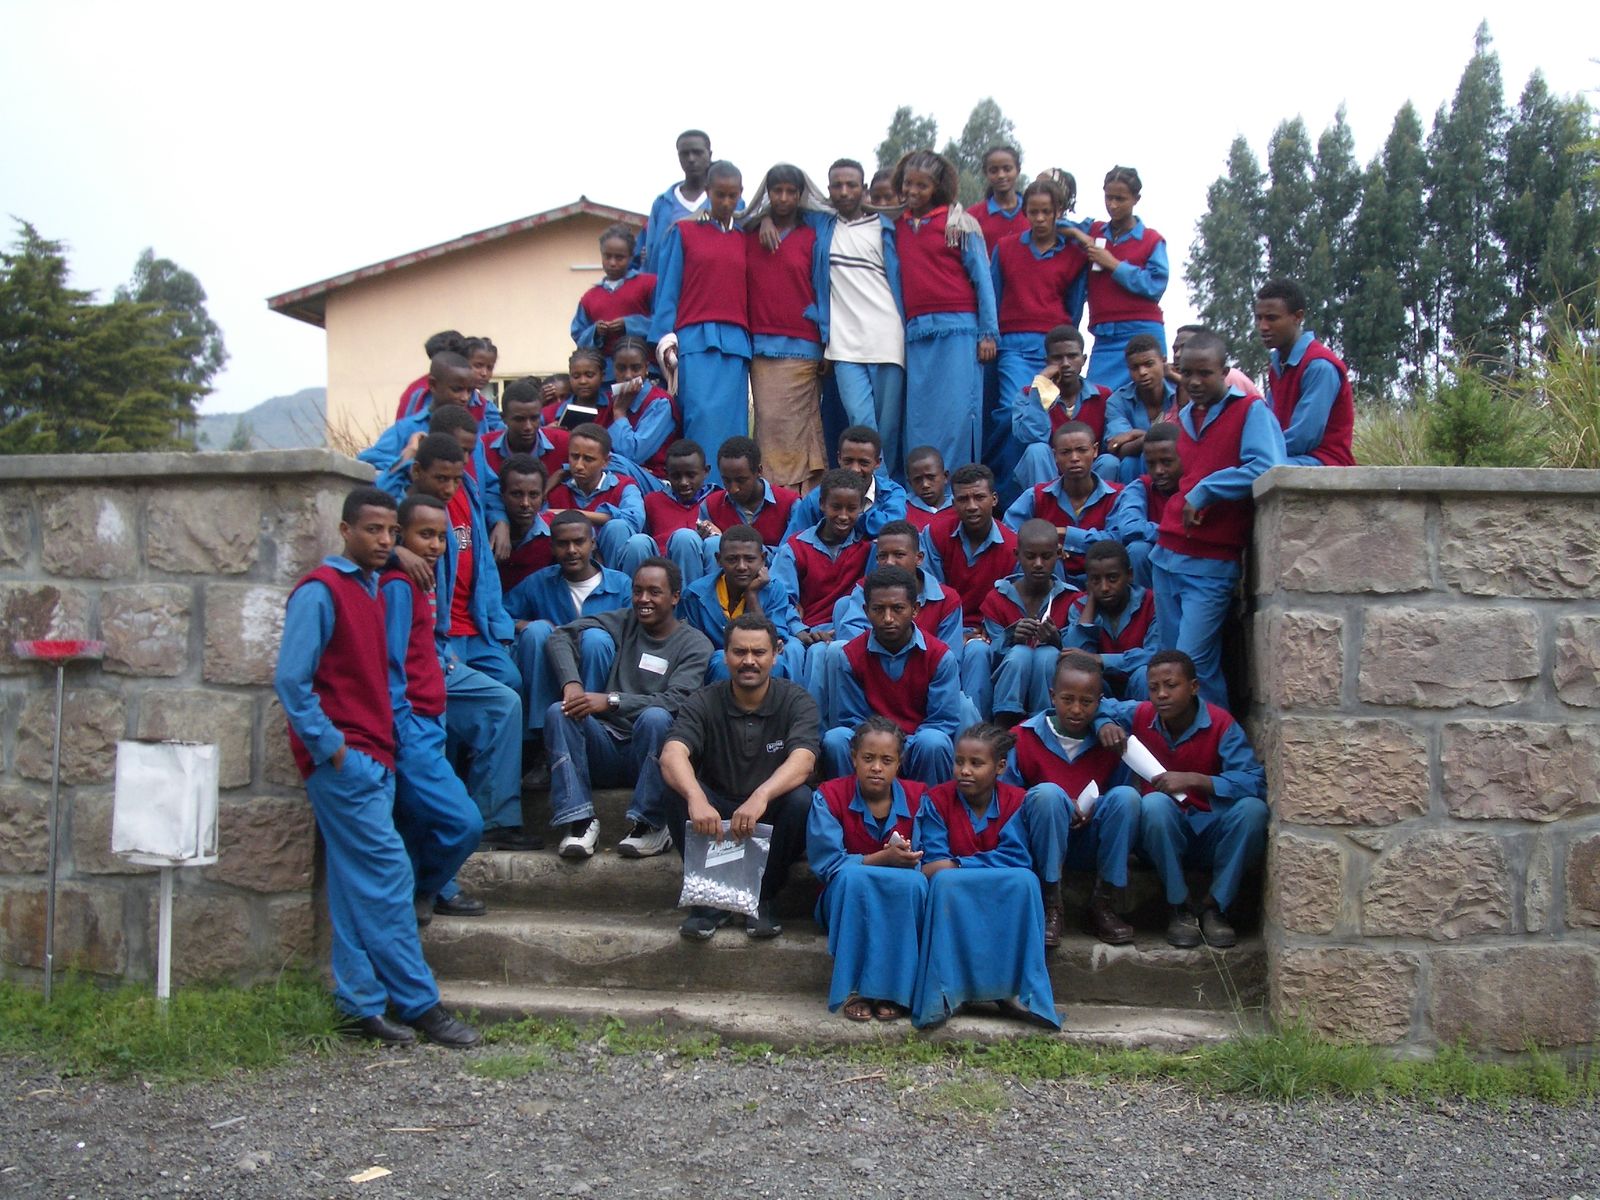 Copy of Ethiopia Students.JPG